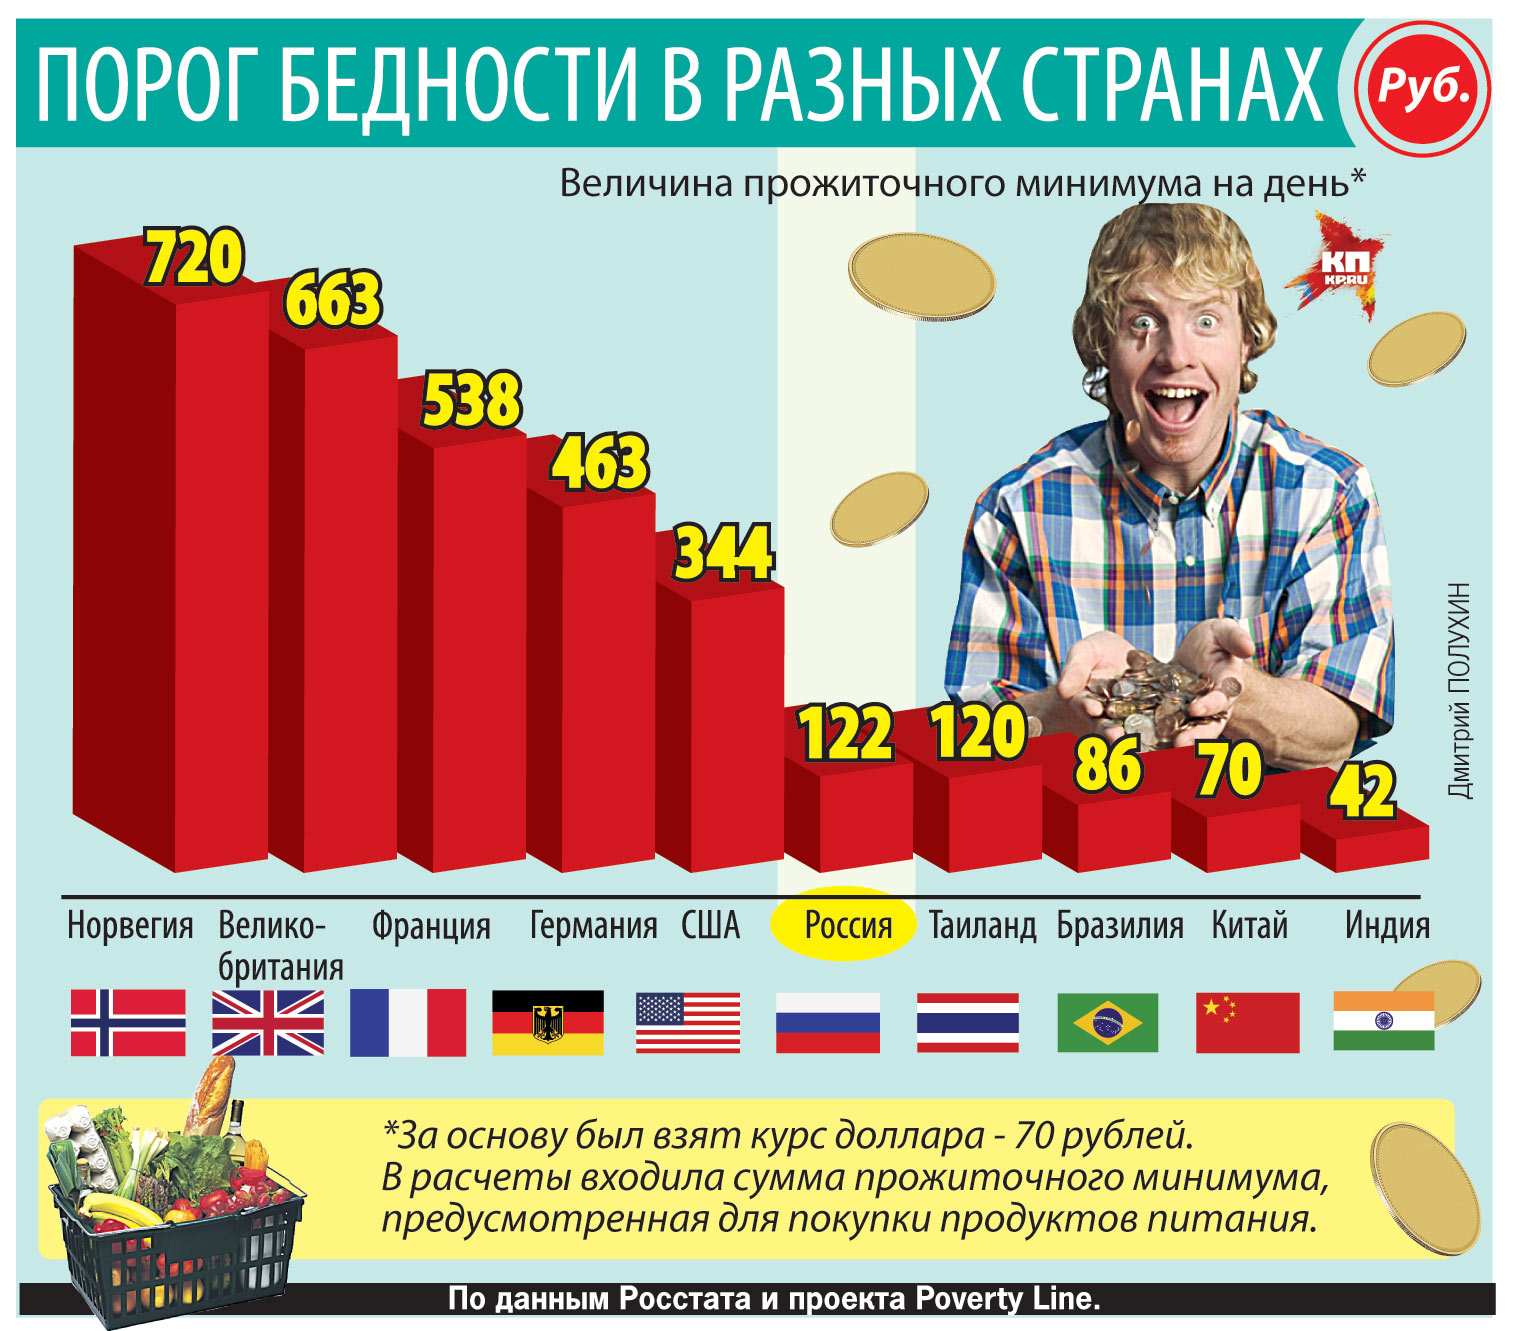 Социальный минимум в рф. Потребительская корзина стран. Прожиточный минимум в России. Прожиточный минимум в Росси. Потребительская корзина и МРОТ.